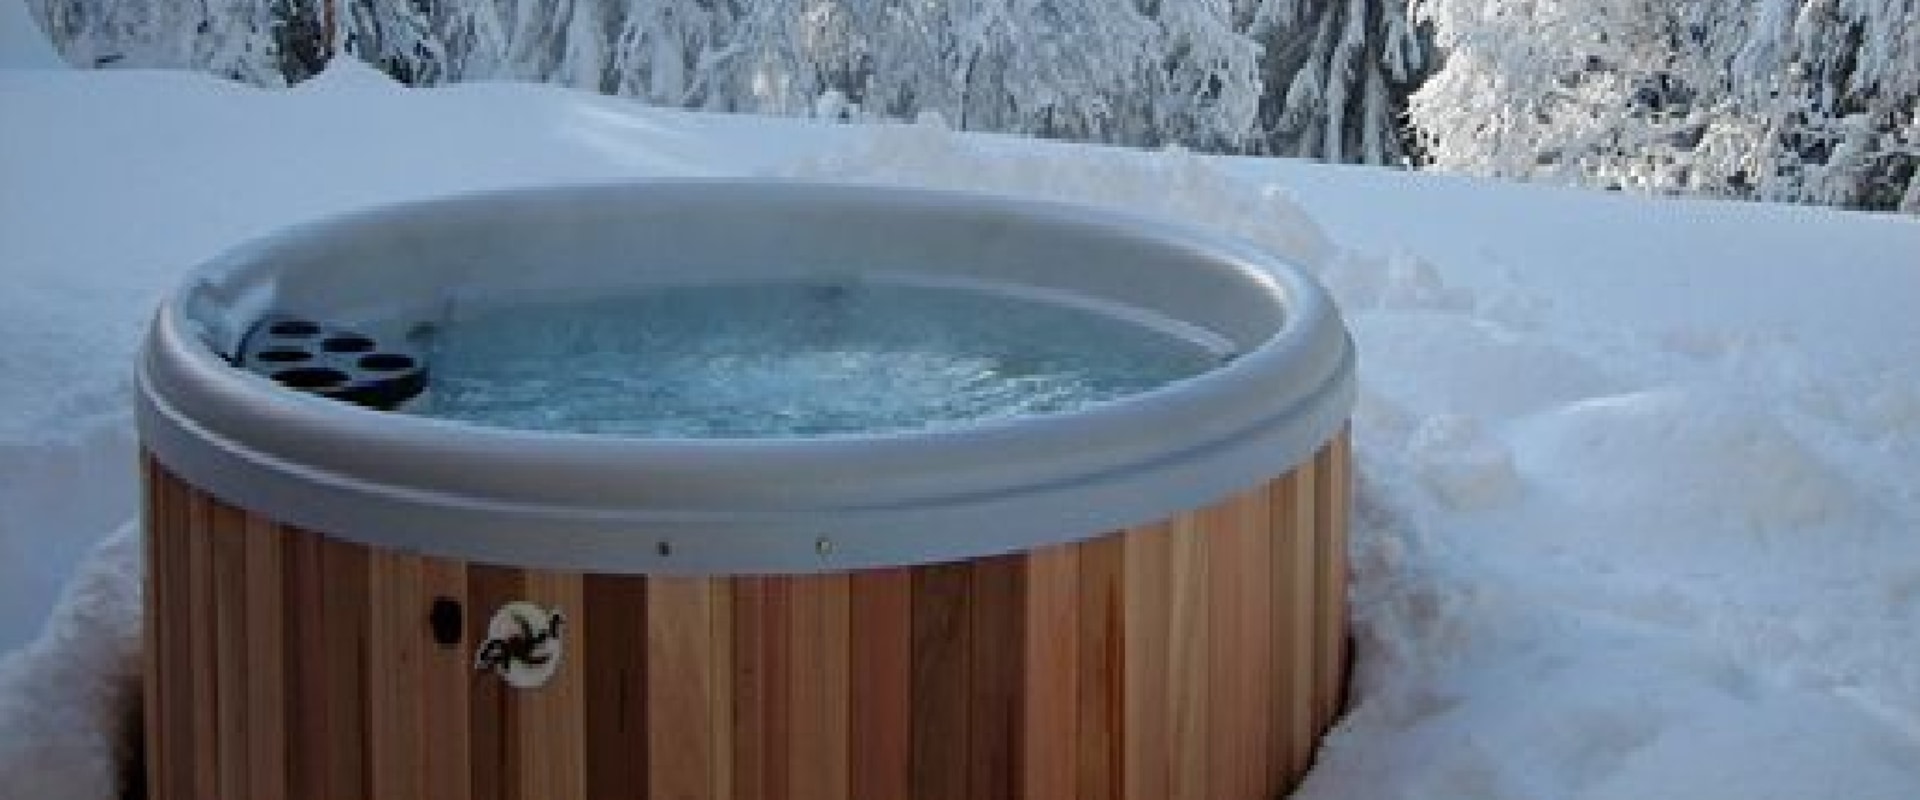 Kun je de opblaasbare hot tub in de winter laten staan?